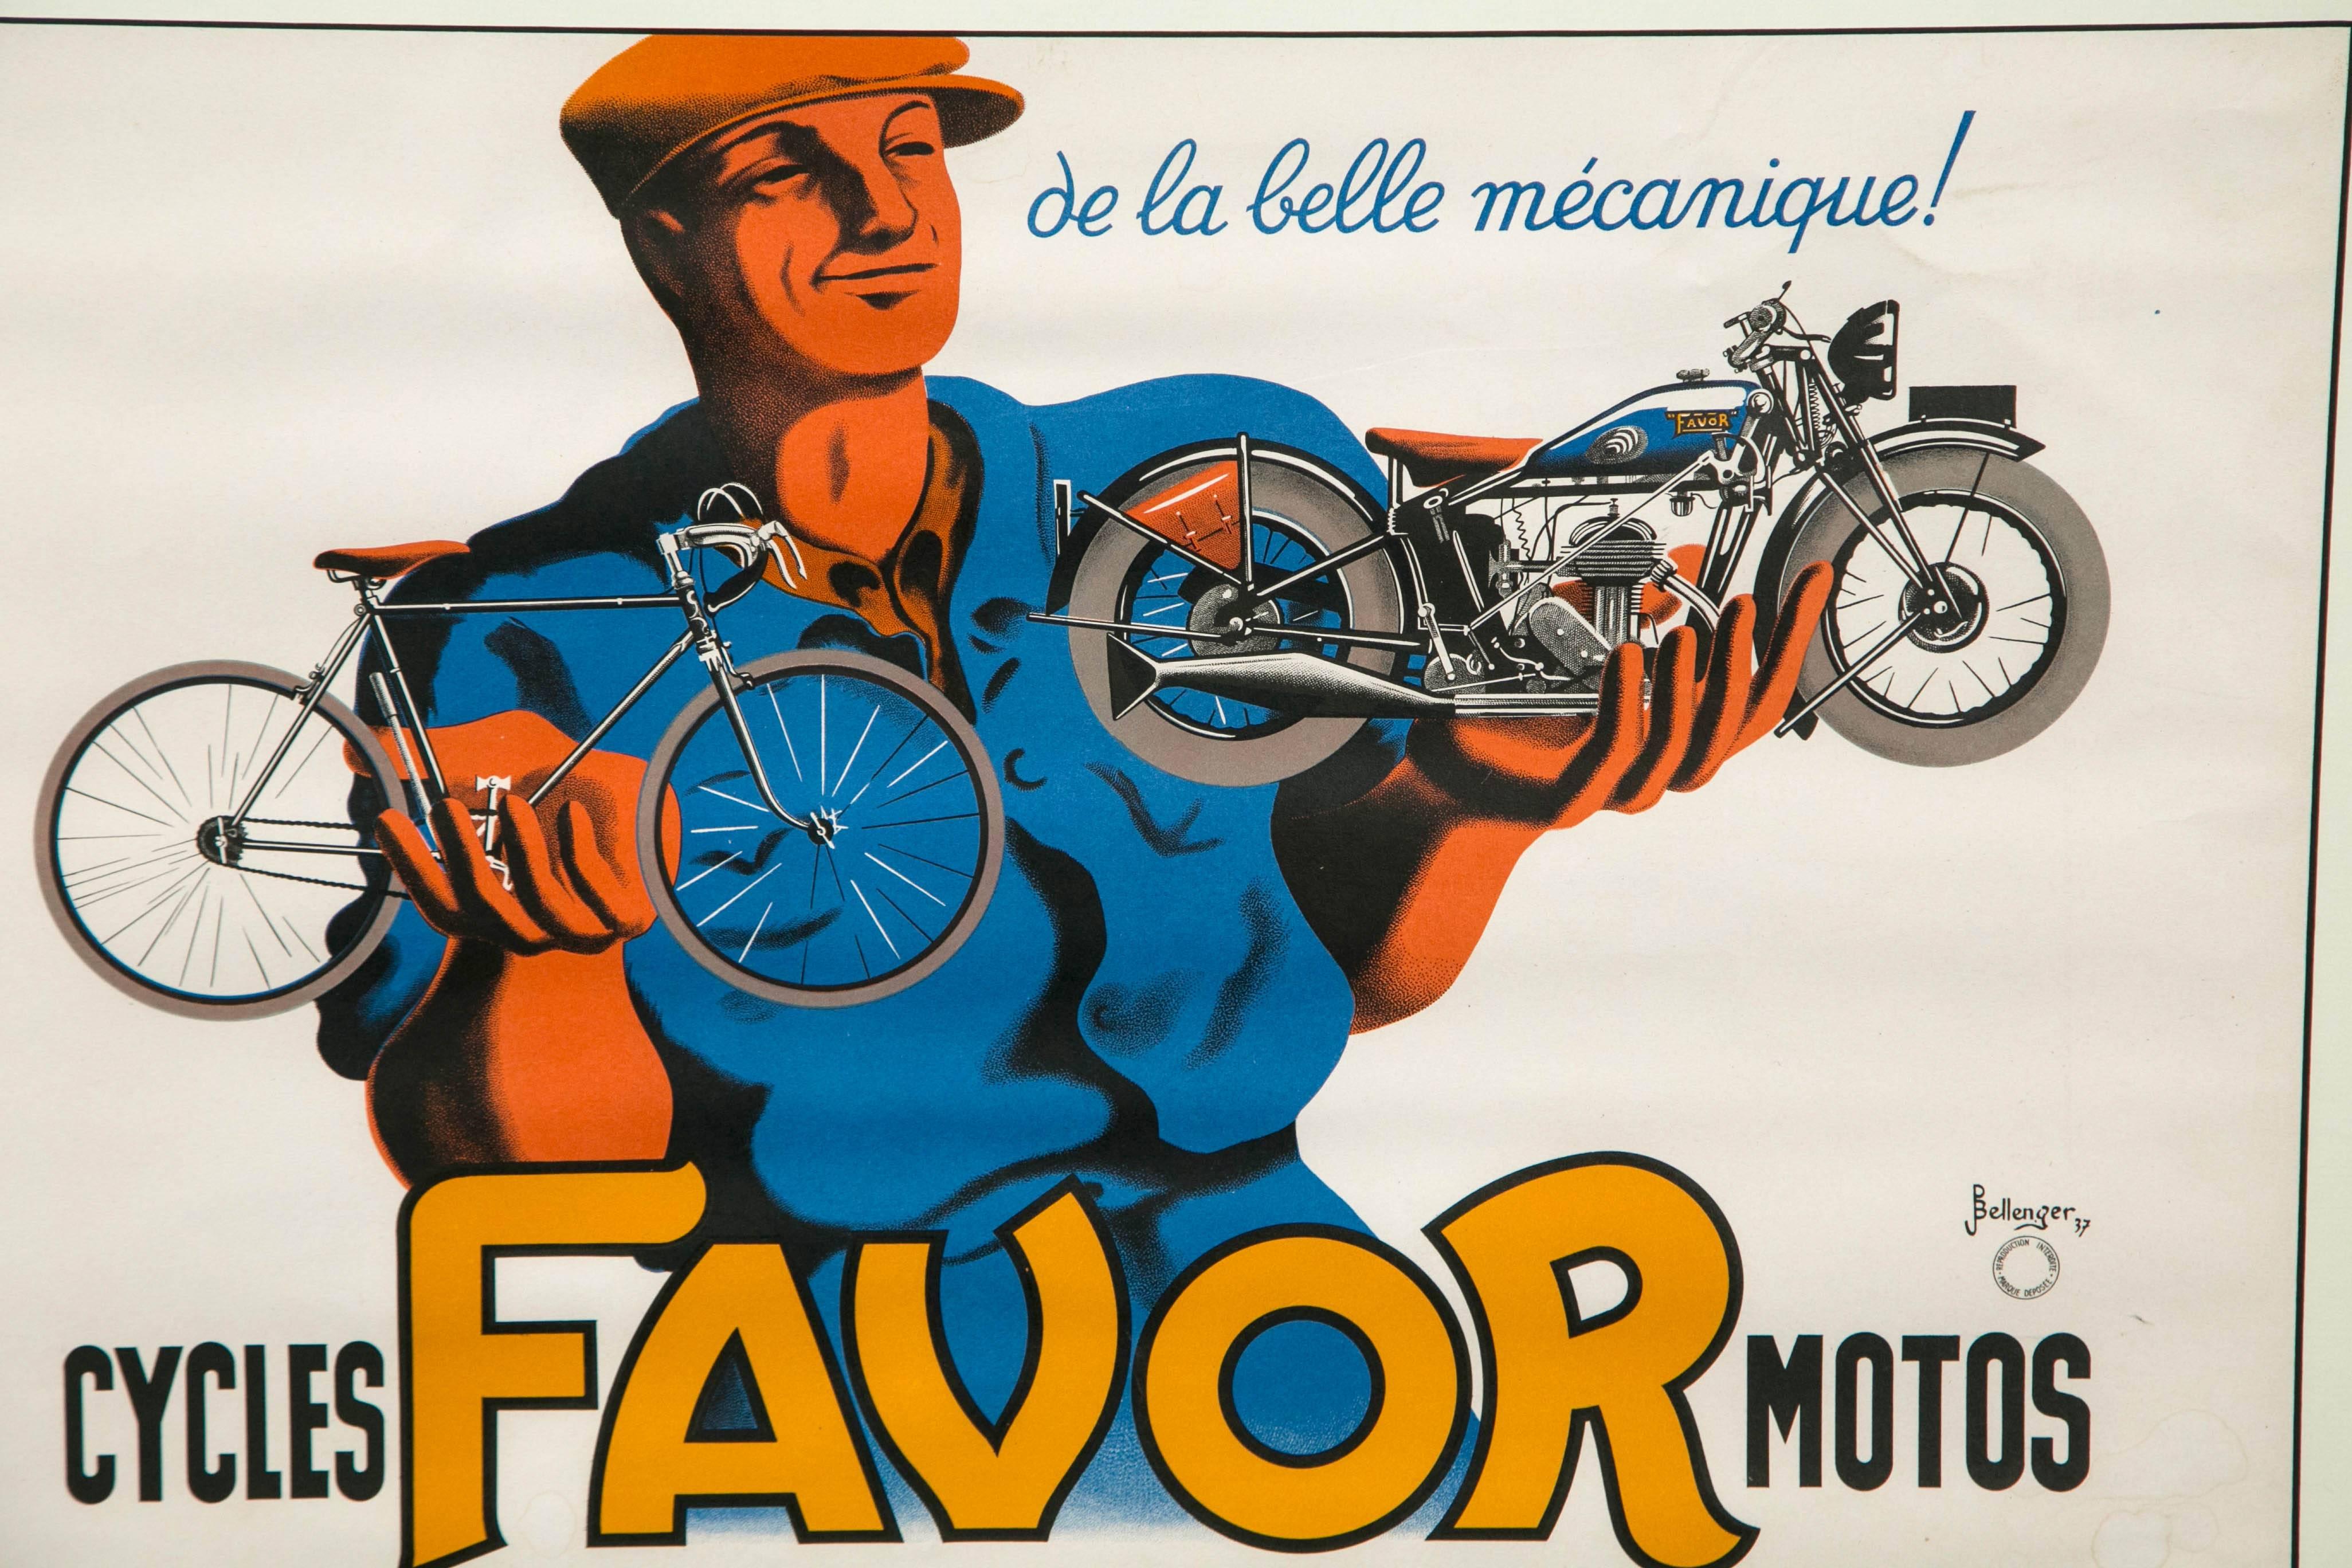 Original-Motorrad-Werbeplakat für die französische Firma Favor von Bellenger aus dem Jahr 1937. Neu gerahmt und mattiert. Die ursprünglichen leuchtenden Farben und Details wurden beibehalten.